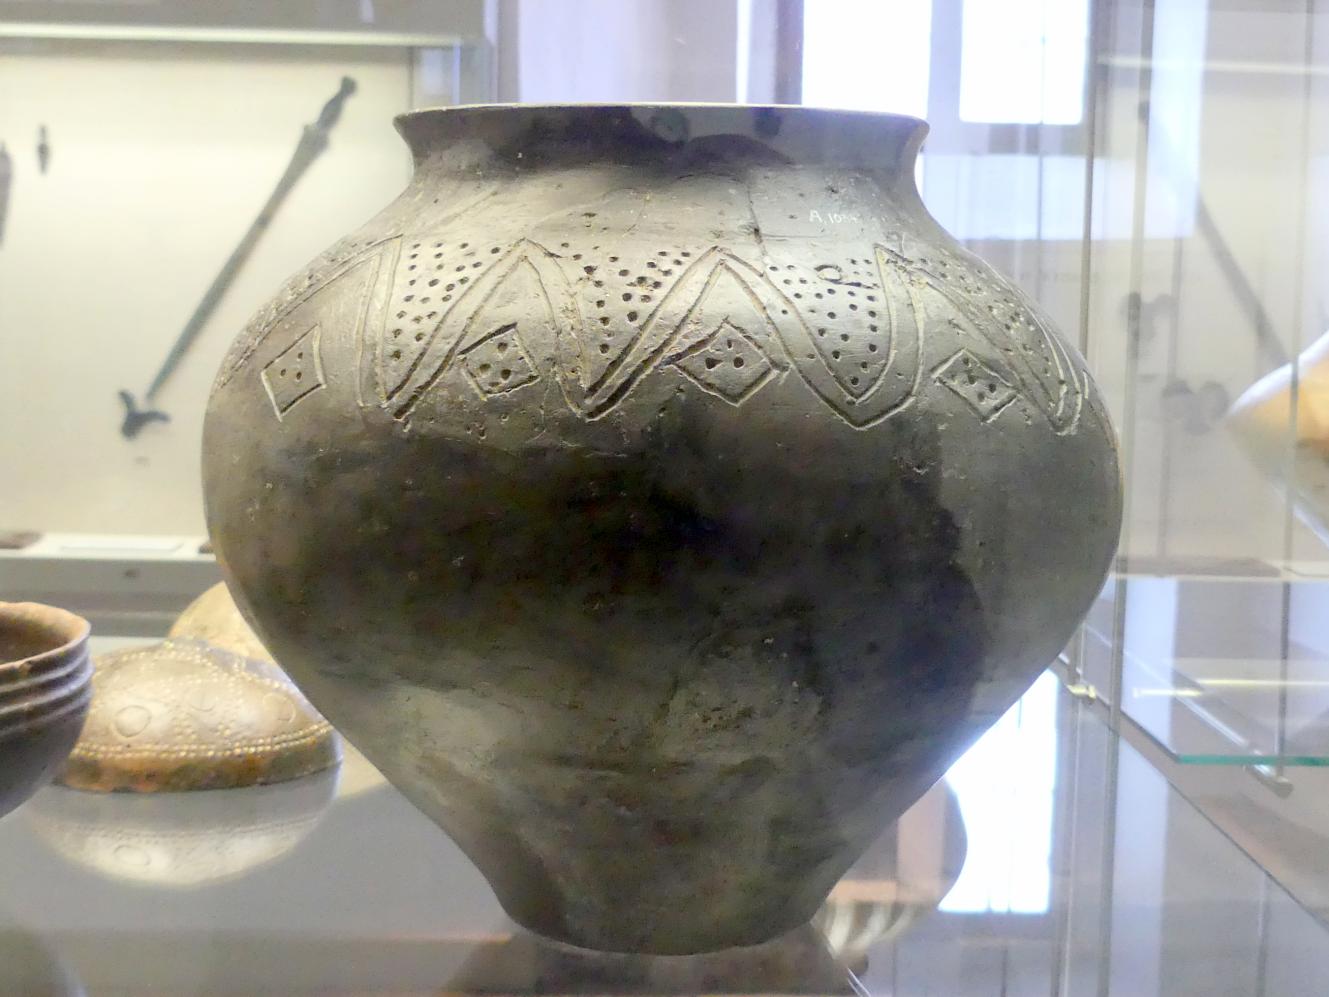 Bauchiges Gefäß, Hallstattzeit, 700 - 200 v. Chr.